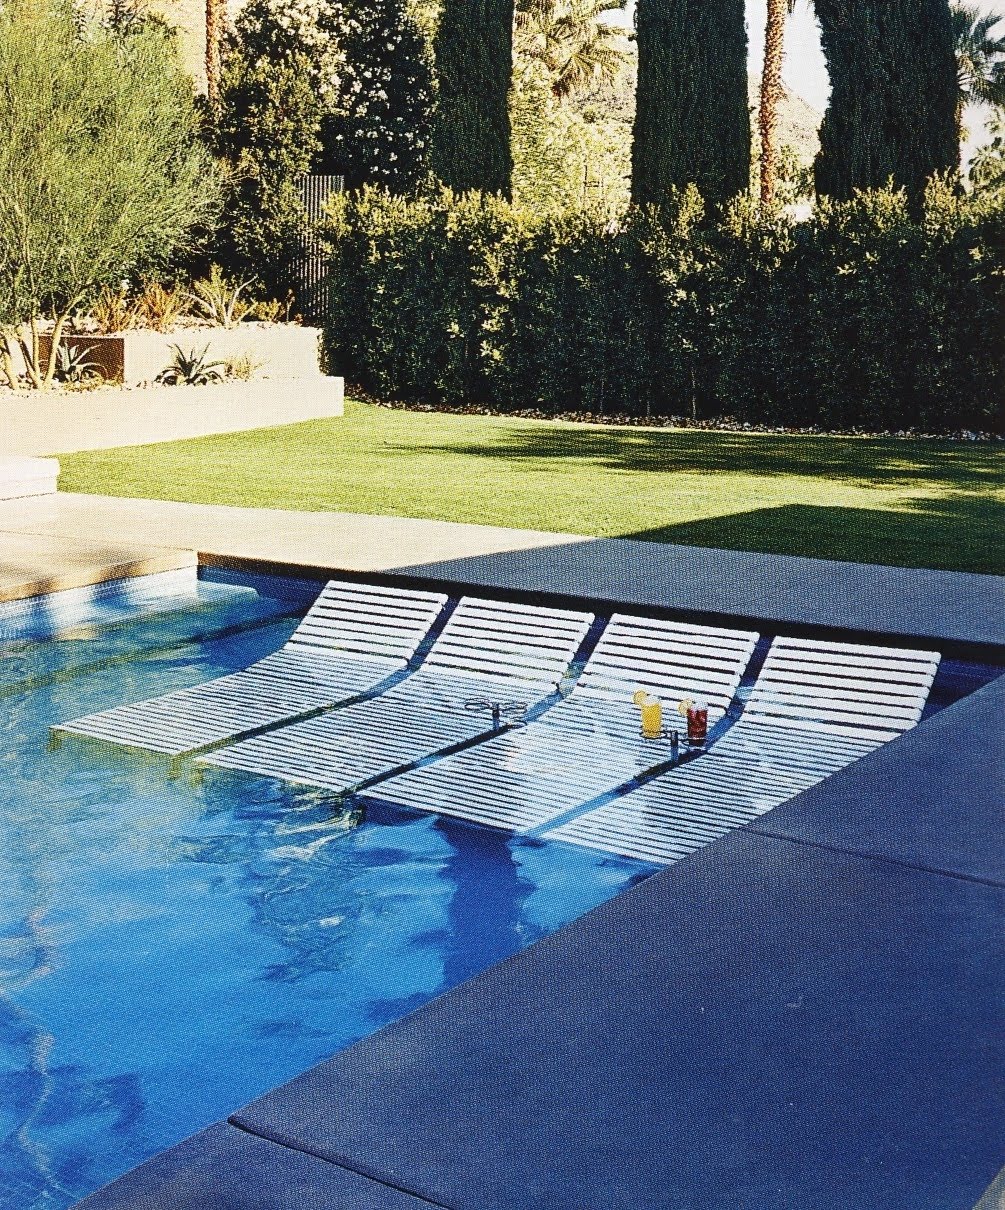 Venta In Pool Lounge Chairs En Stock, Pool Lounge Chair In Water